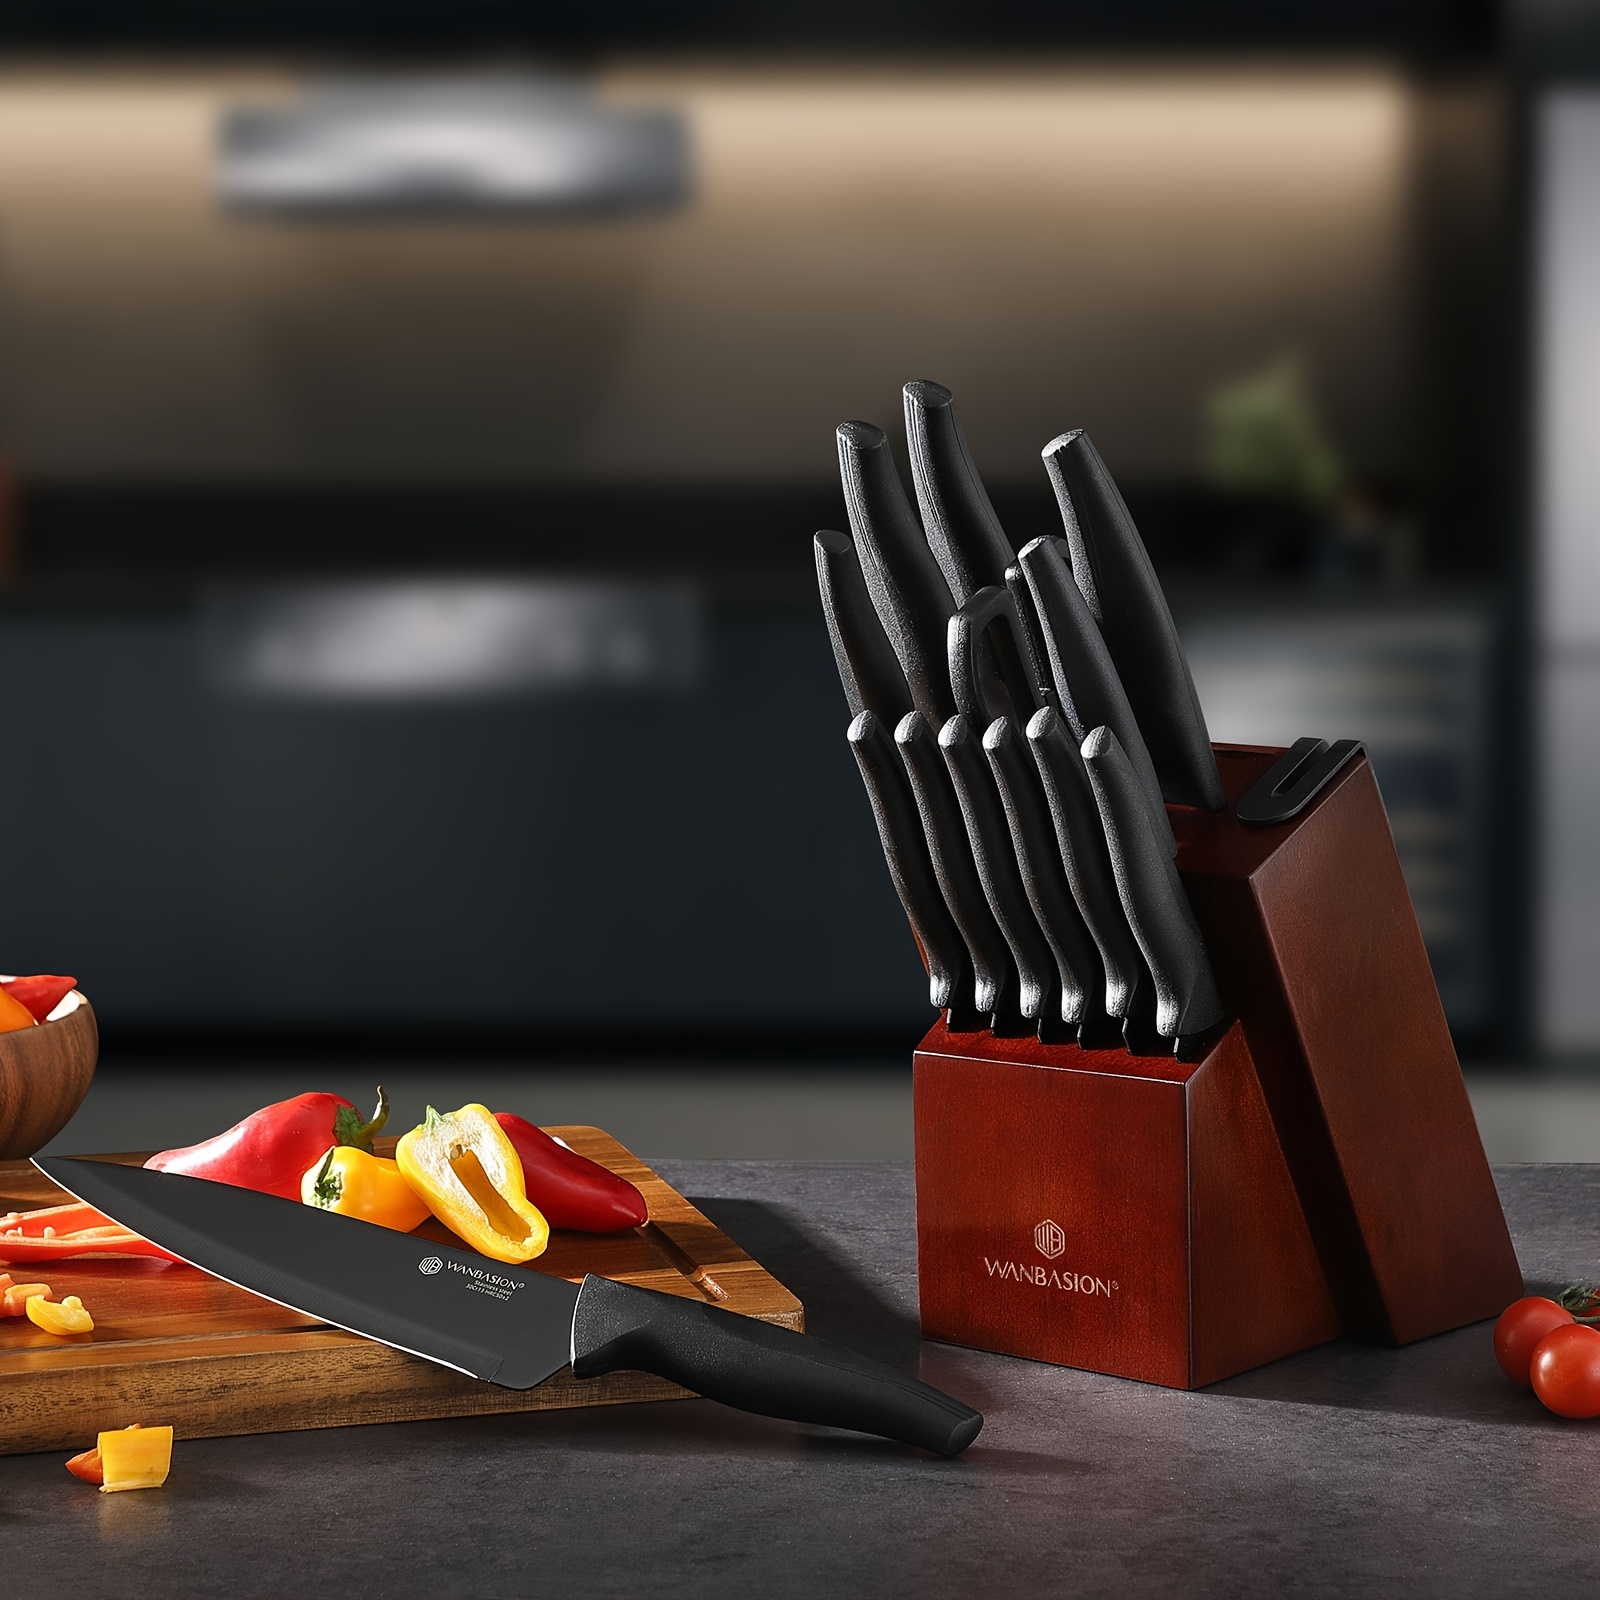 

15pcs Kitchen Knife Set With Block And Sharpener, Sharp Stainless Steel Knife Set, Dishwasher Safe Knives Set With Block Black